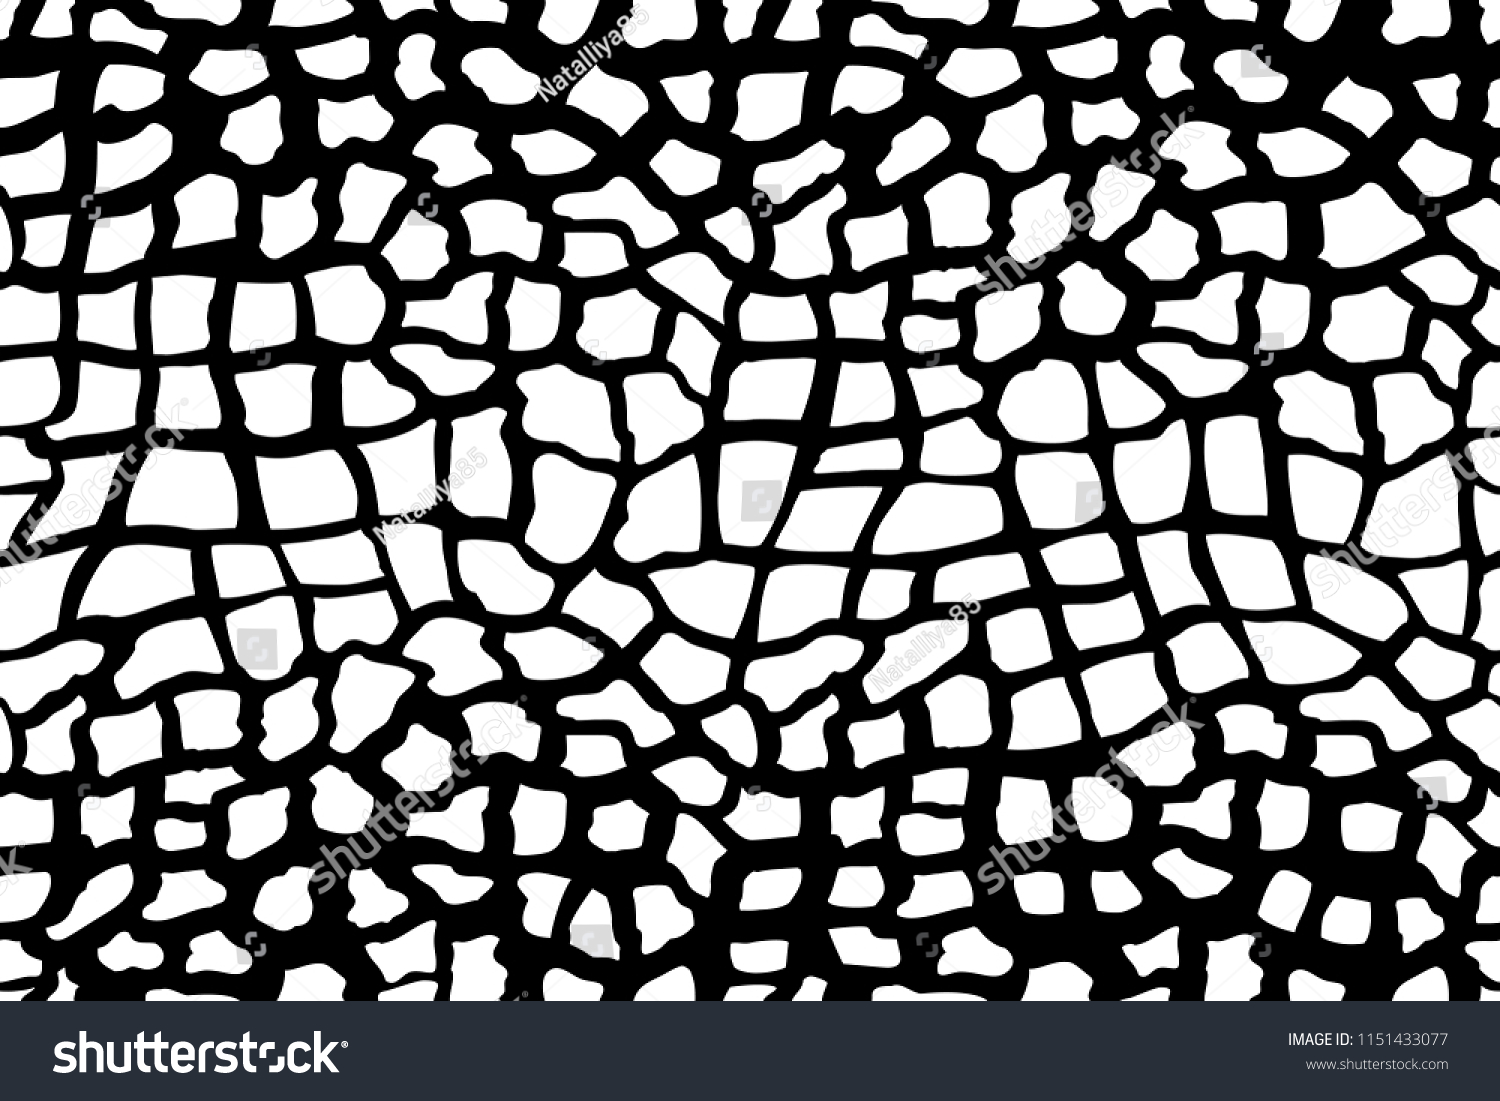 キリンのシームレスな模様 ベクター画像 ワニ 皮膚 壁紙 背景 モノクロ 織物 ファッション グラフィック 白黒のヘビ のベクター画像素材 ロイヤリティフリー 1151433077